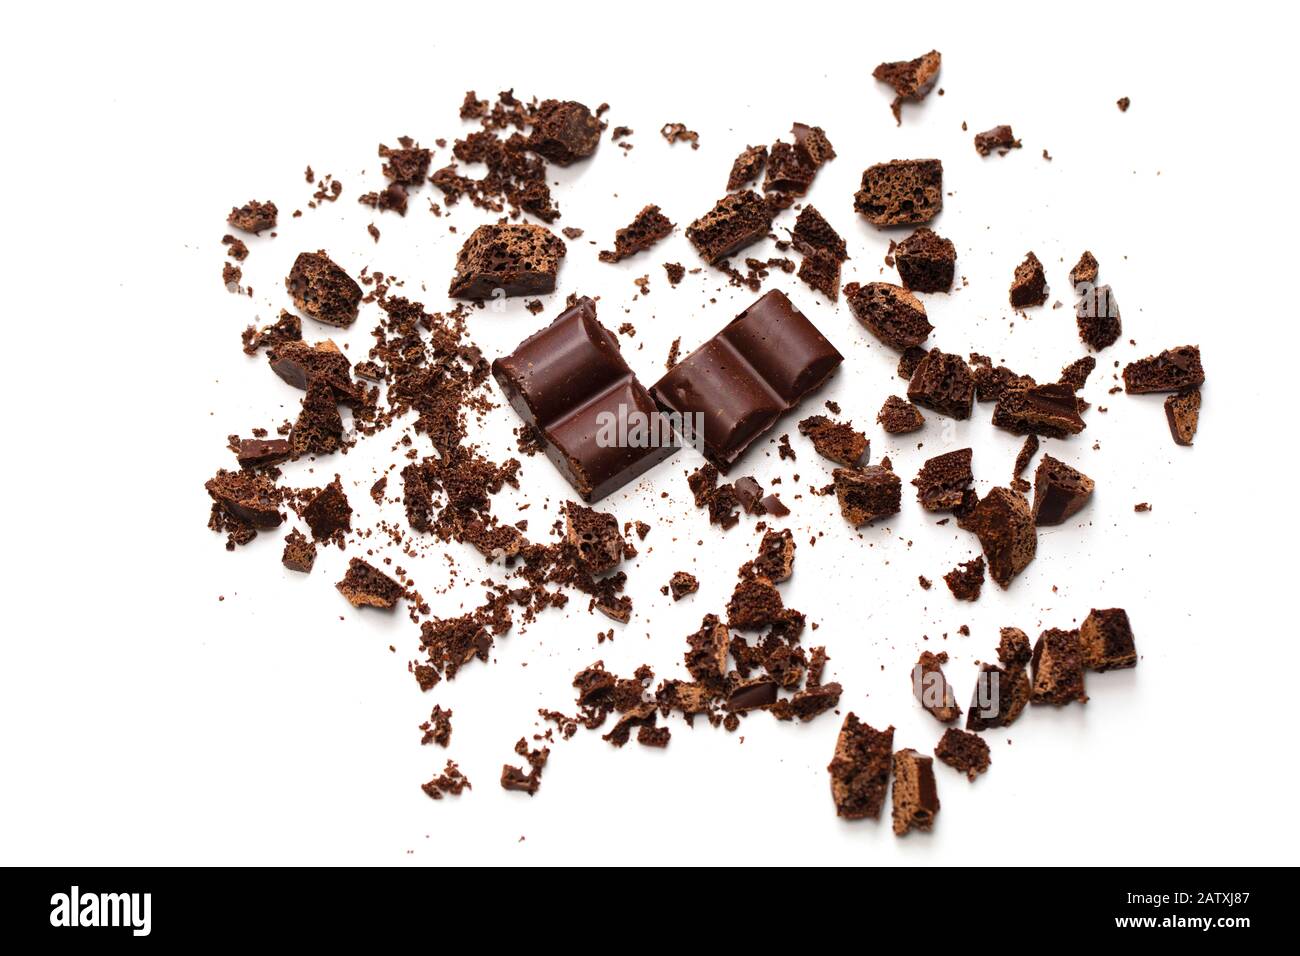 Дробленый шоколад. Измельченный шоколад. Шоколадная крошка на белом фоне. Раскрошенный шоколад. Кусочки шоколада.